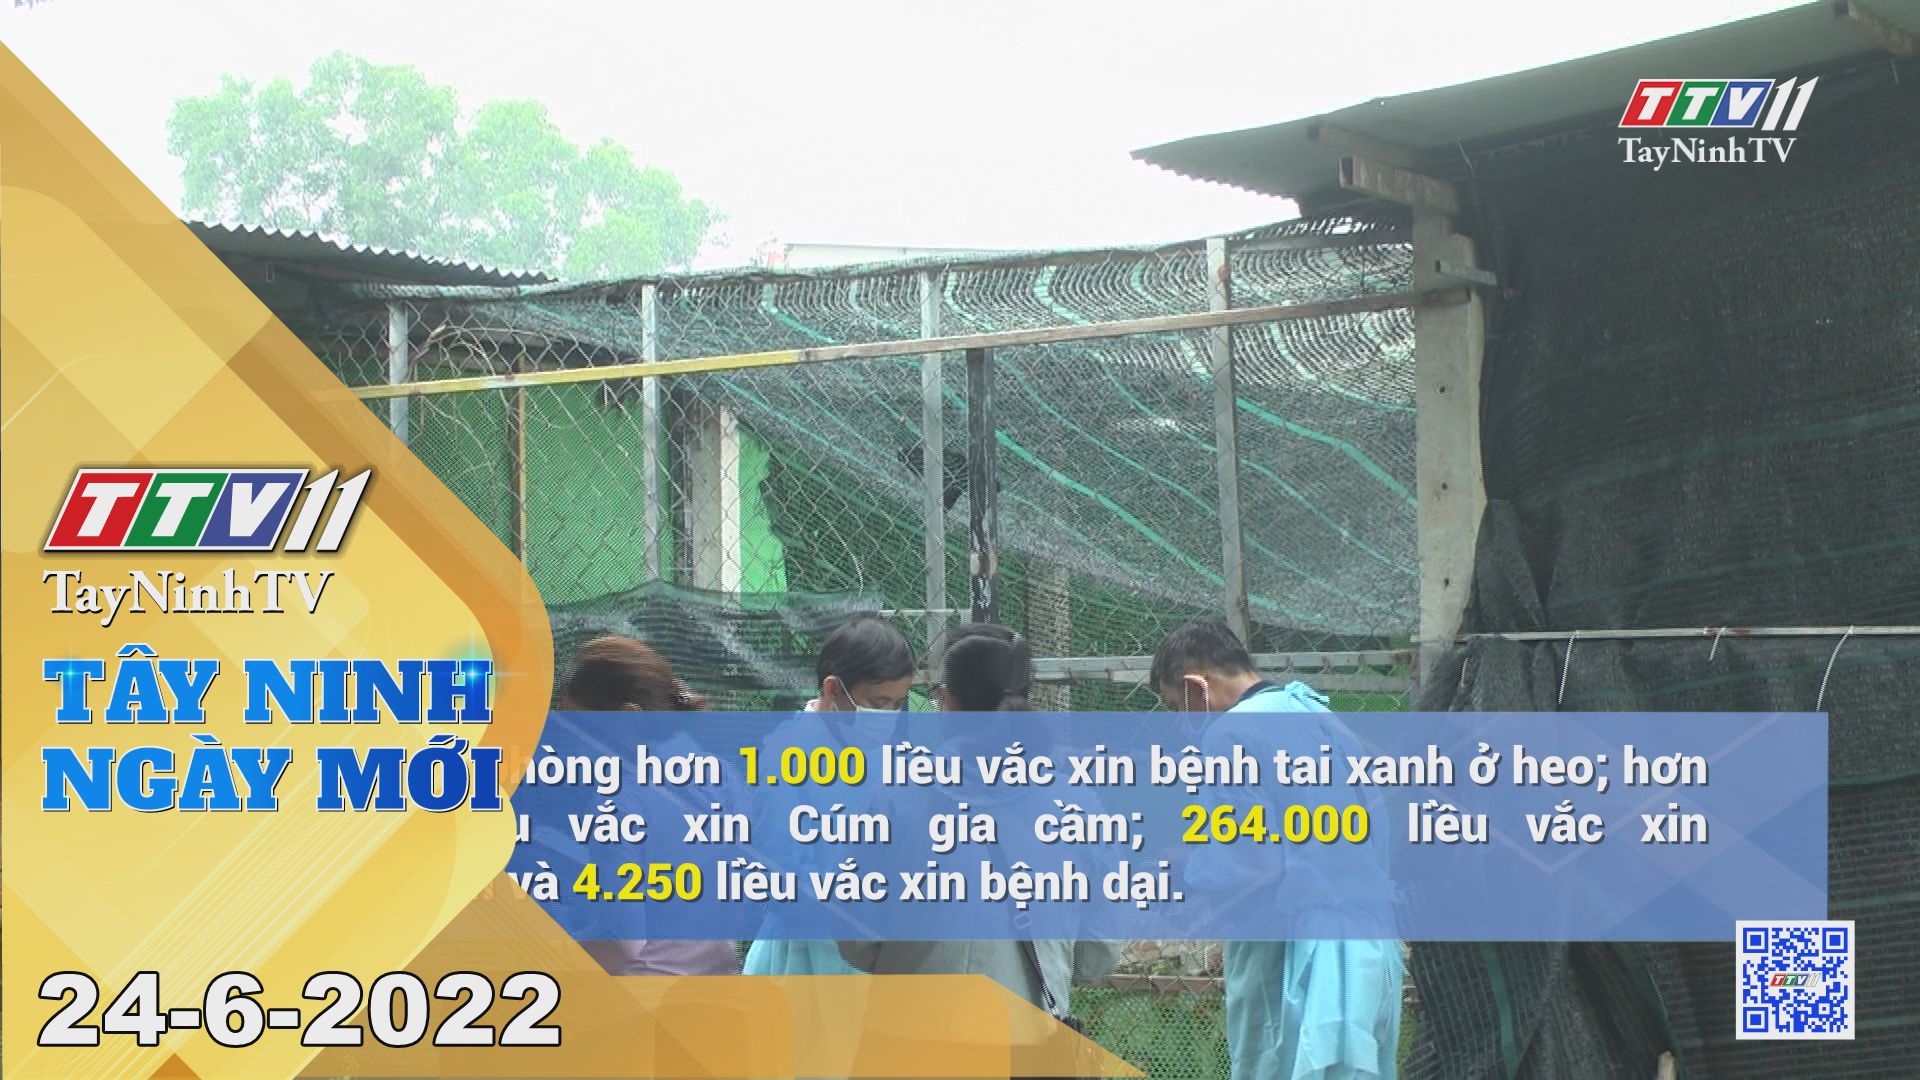 Tây Ninh ngày mới 24-6-2022 | Tin tức hôm nay | TayNinhTV